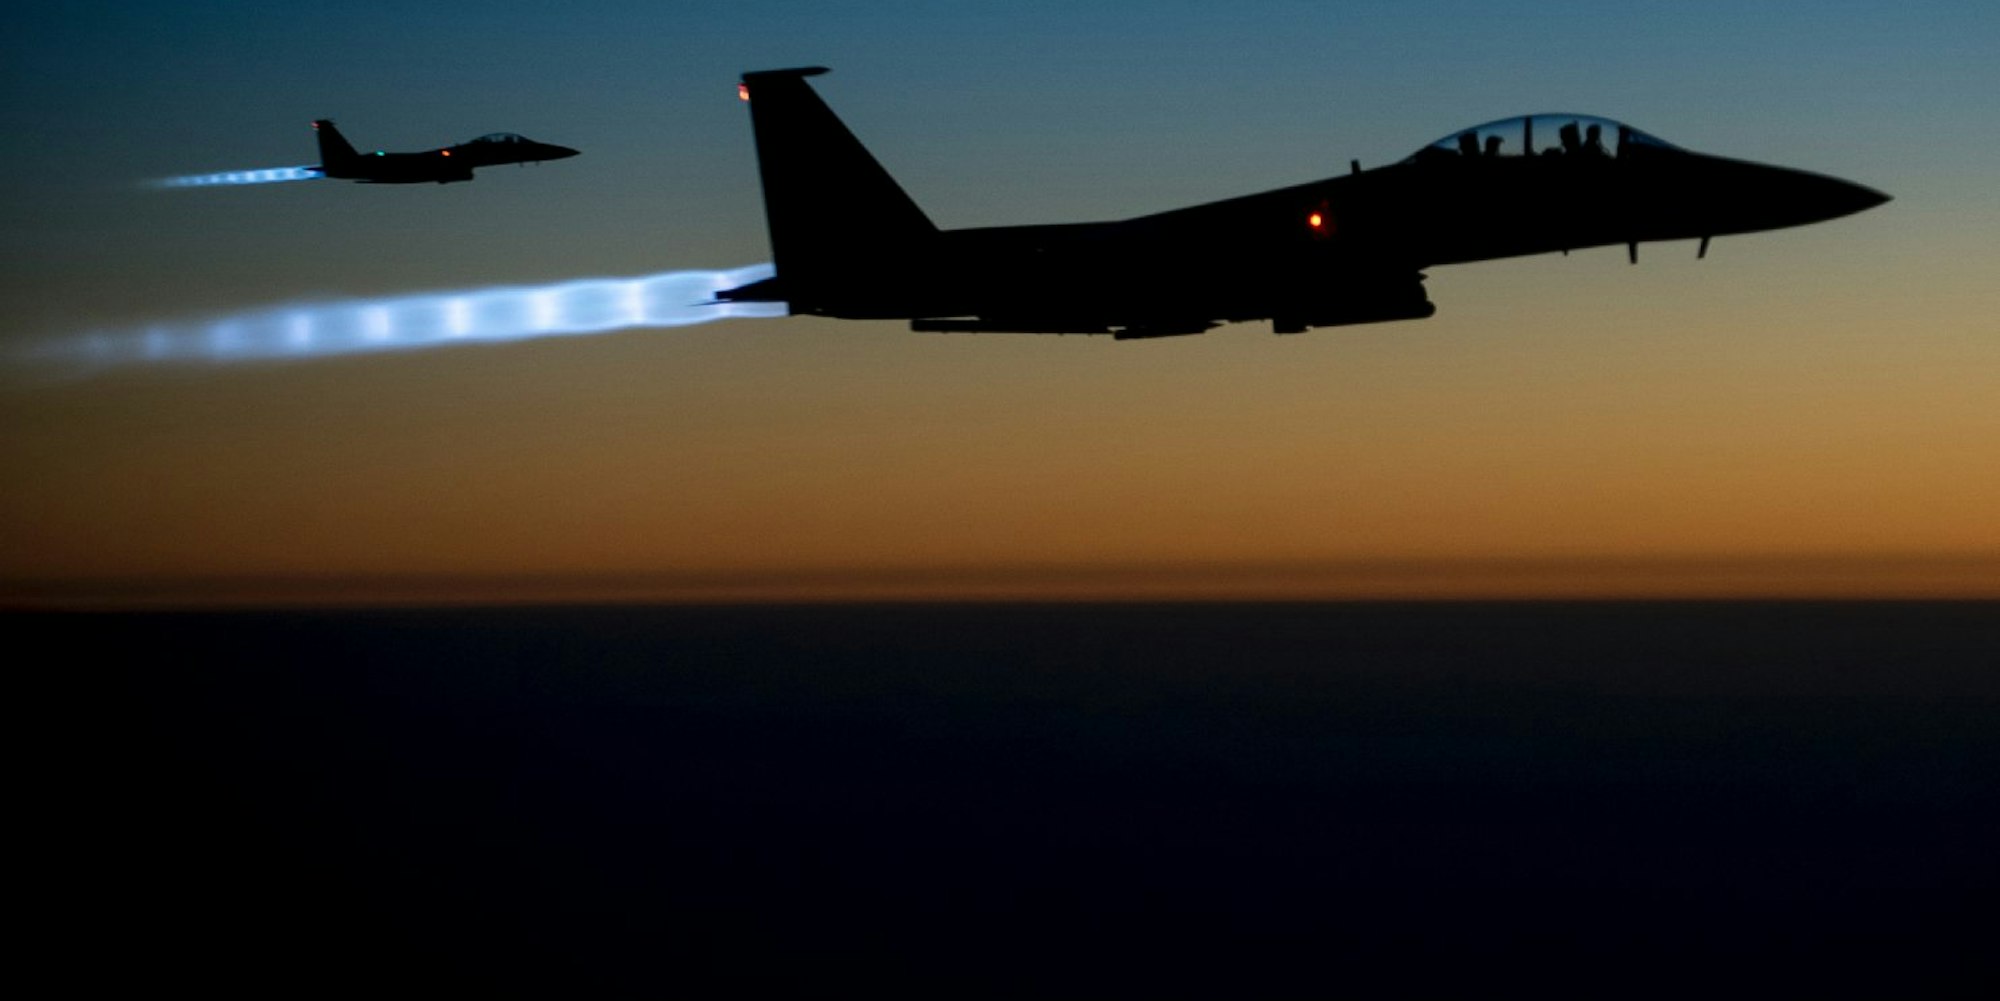 Am Mittwoch meldete das US-Militär erneut insgesamt 23 Luftangriffe, die meisten davon nahe der heftig umkämpften kurdischen Enklave Kobane in Nordsyrien.